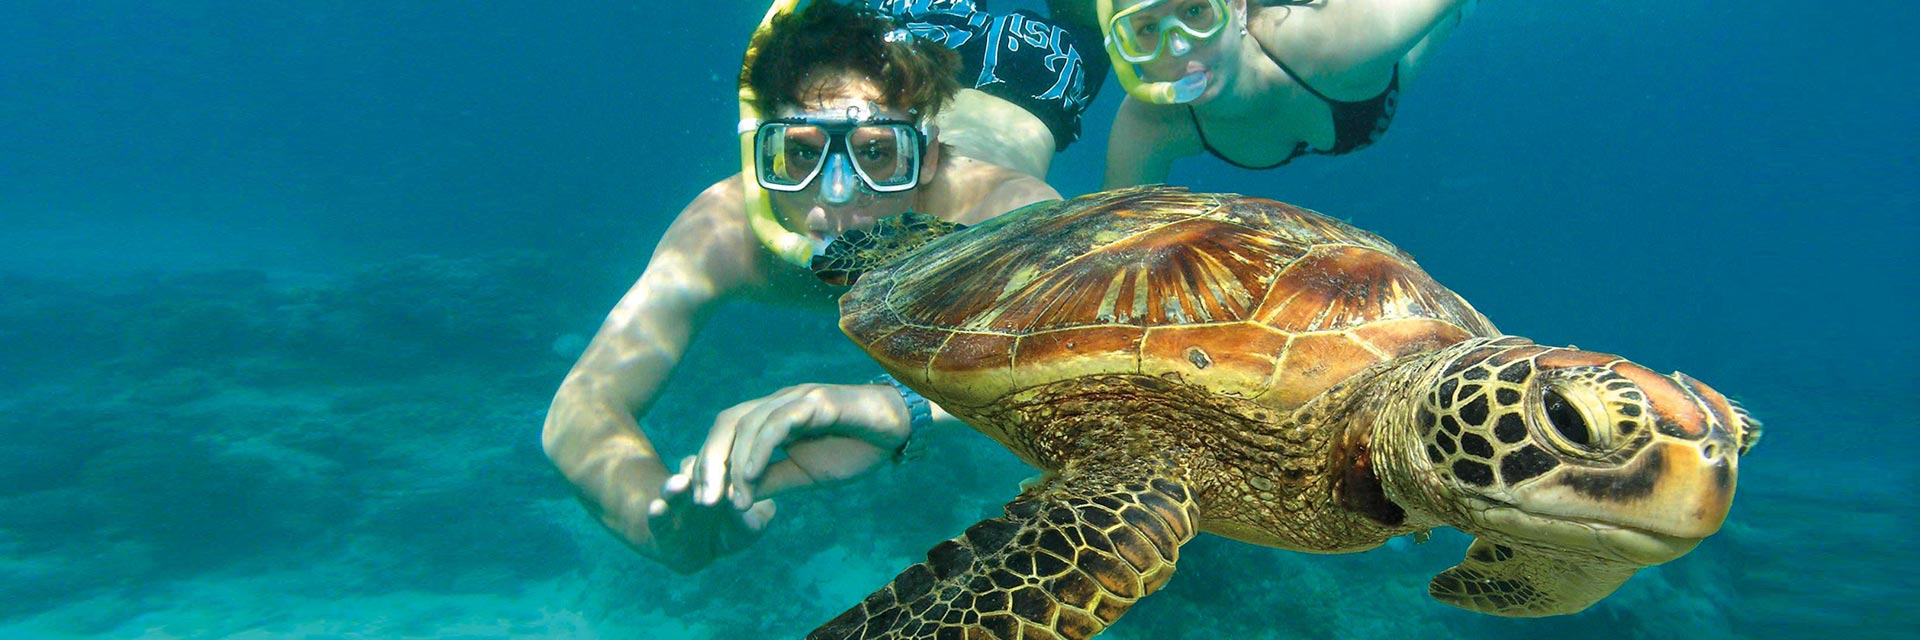 header-snorkel-with-turtles.jpg